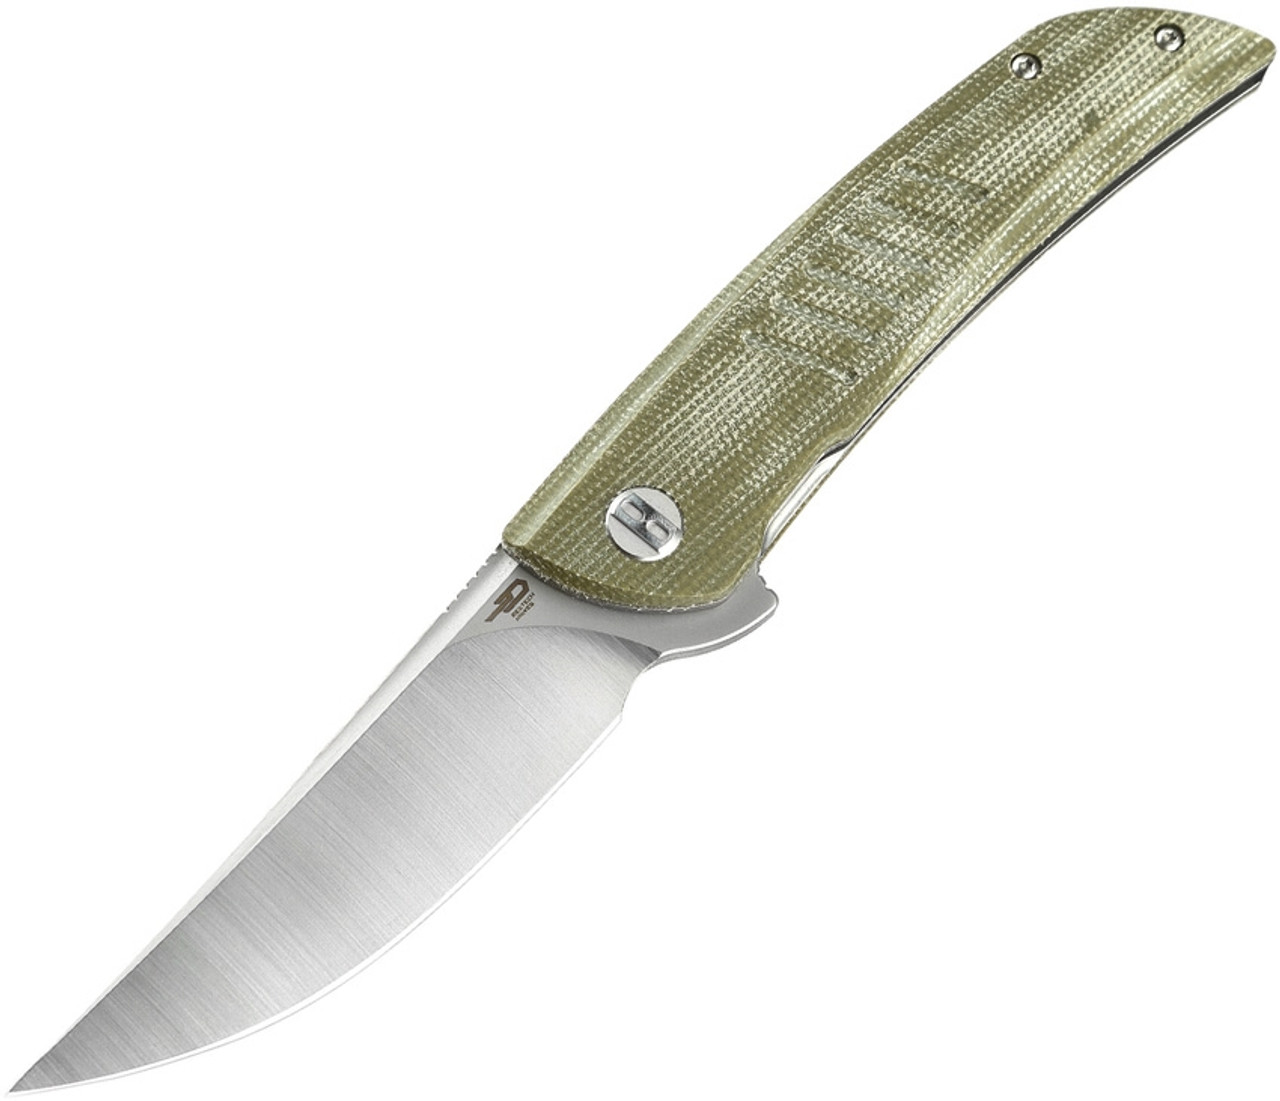 Bestech Knives Swift Folding Knife G30A-1, 3.5" D2 Satin Plain Blade, Green Canvas Micarta Handle